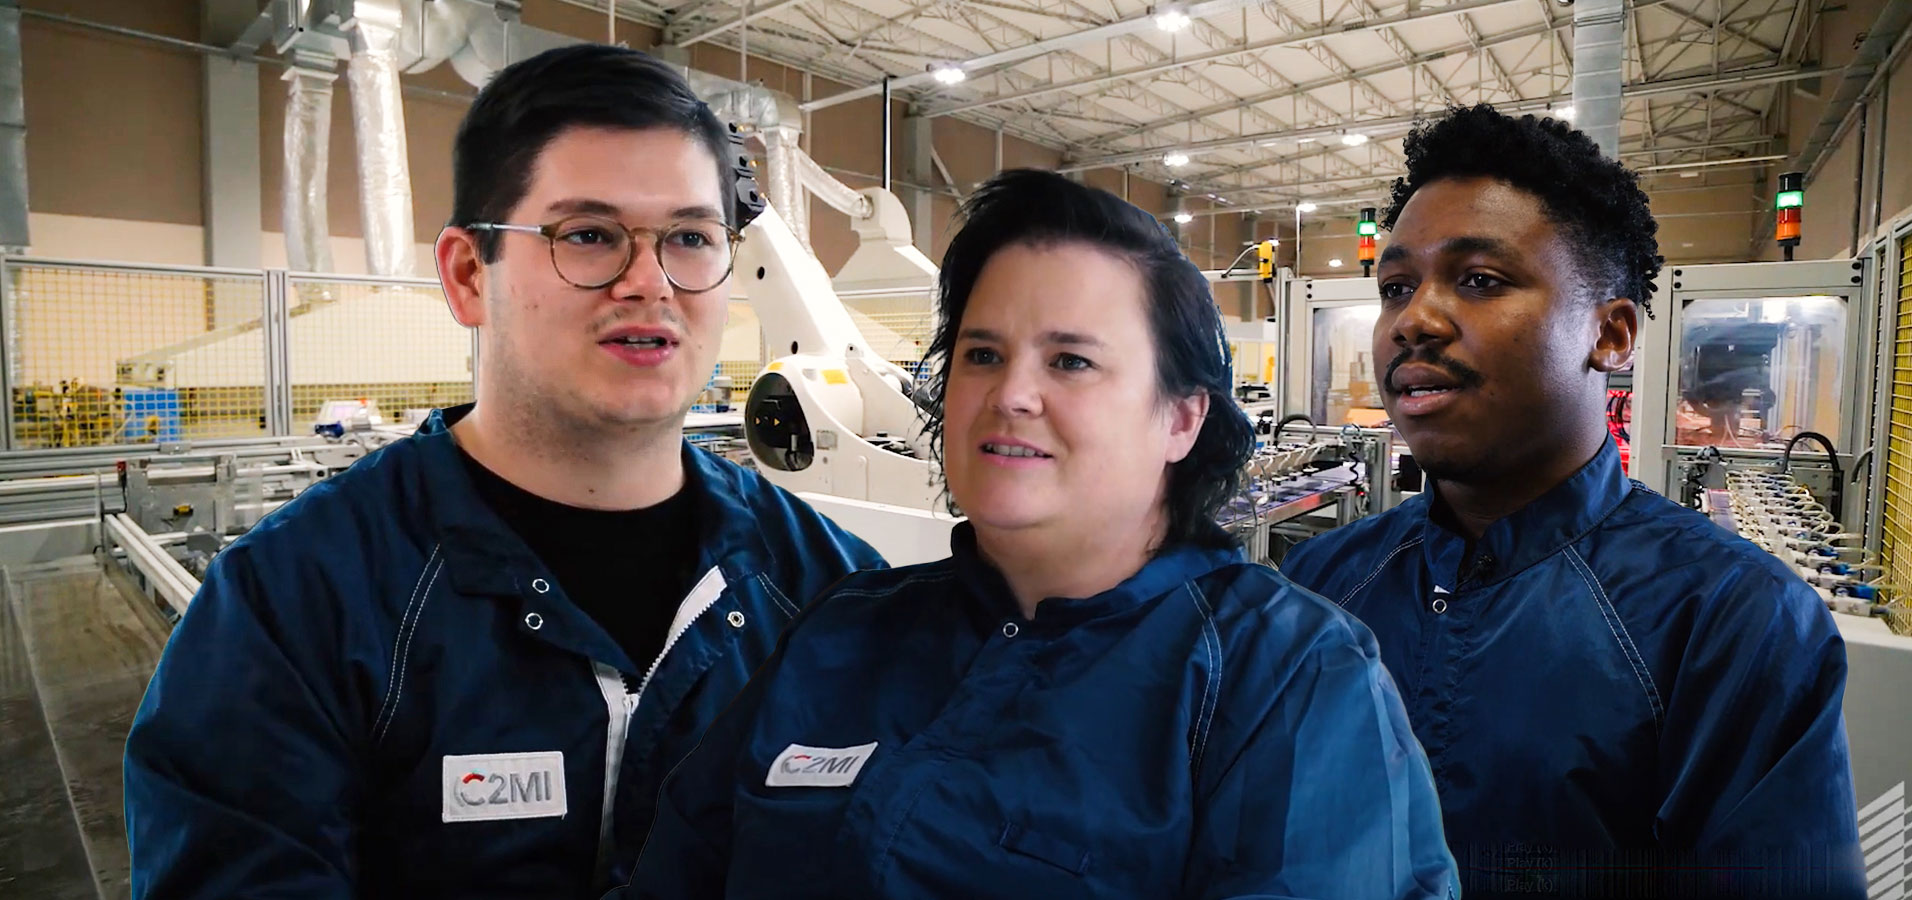 Trois techniciens portant un uniforme de travail bleu foncé